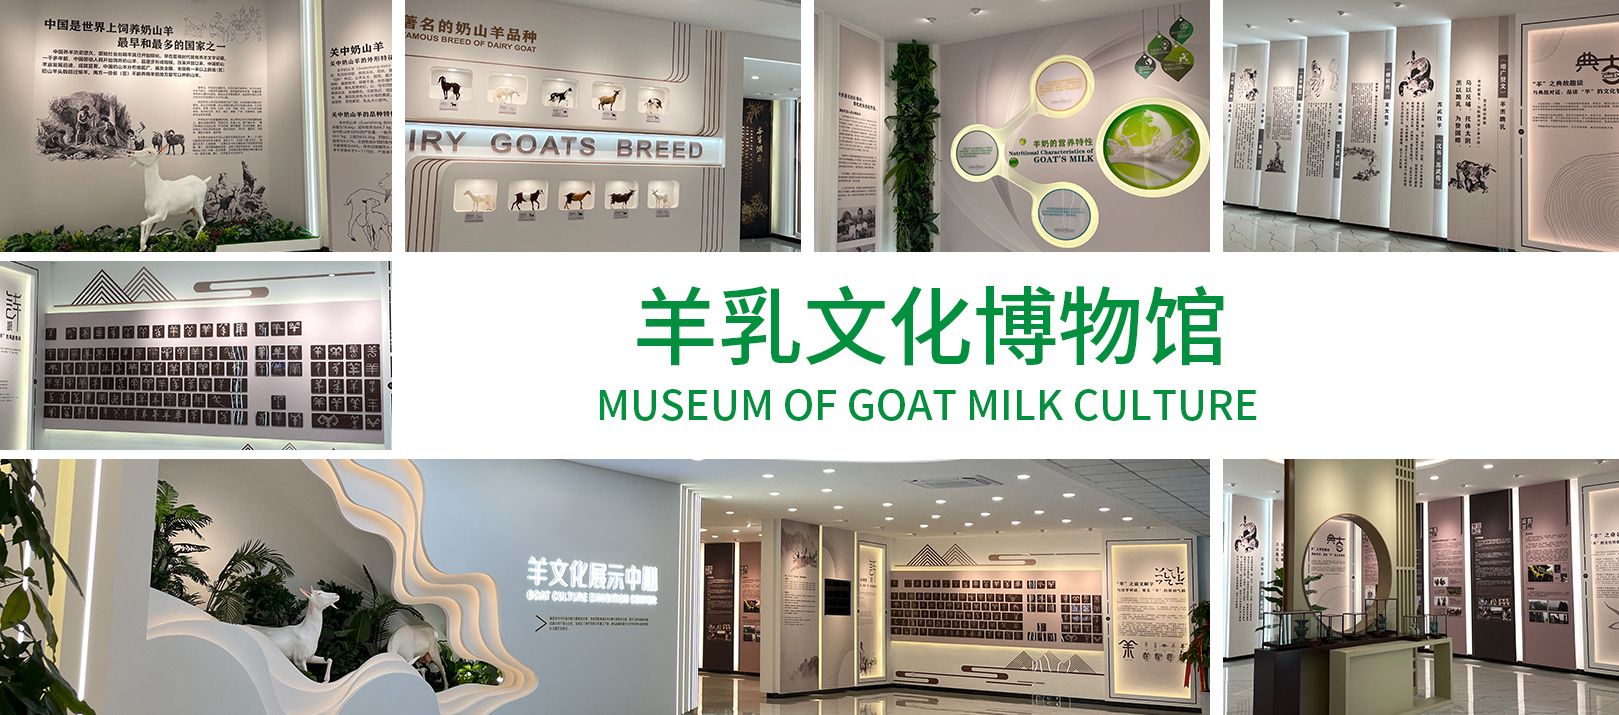 羊乳文化博物馆